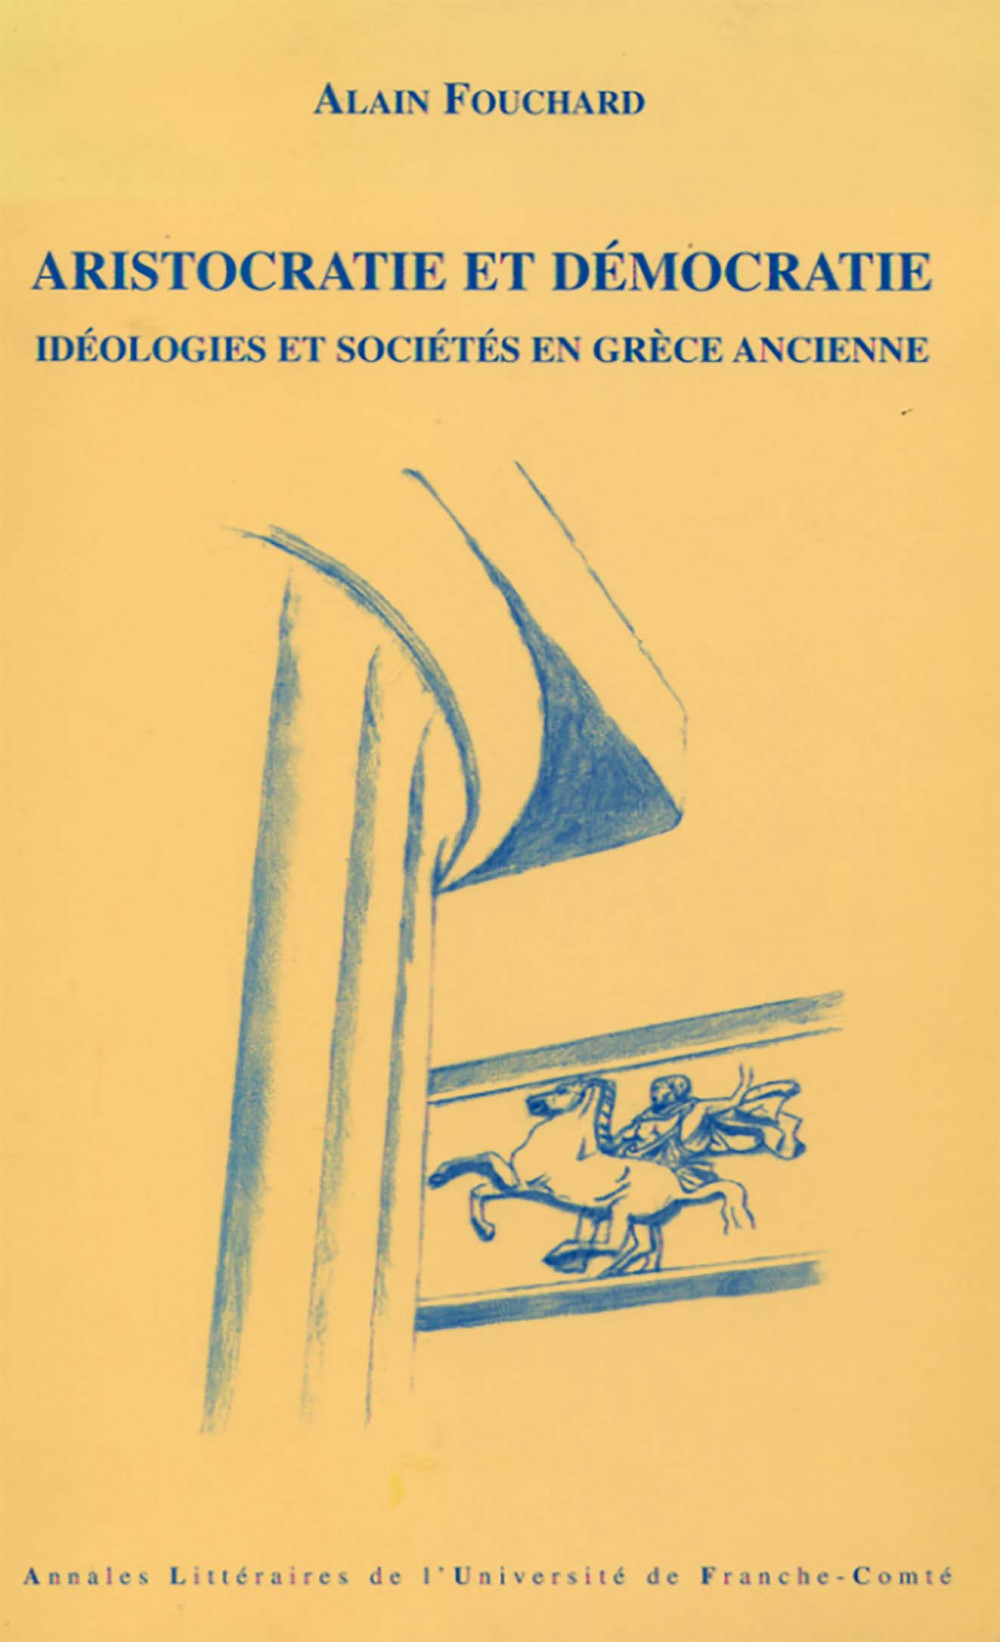 Aristocratie et Démocratie. Idéologies et sociétés en Grèce ancienne